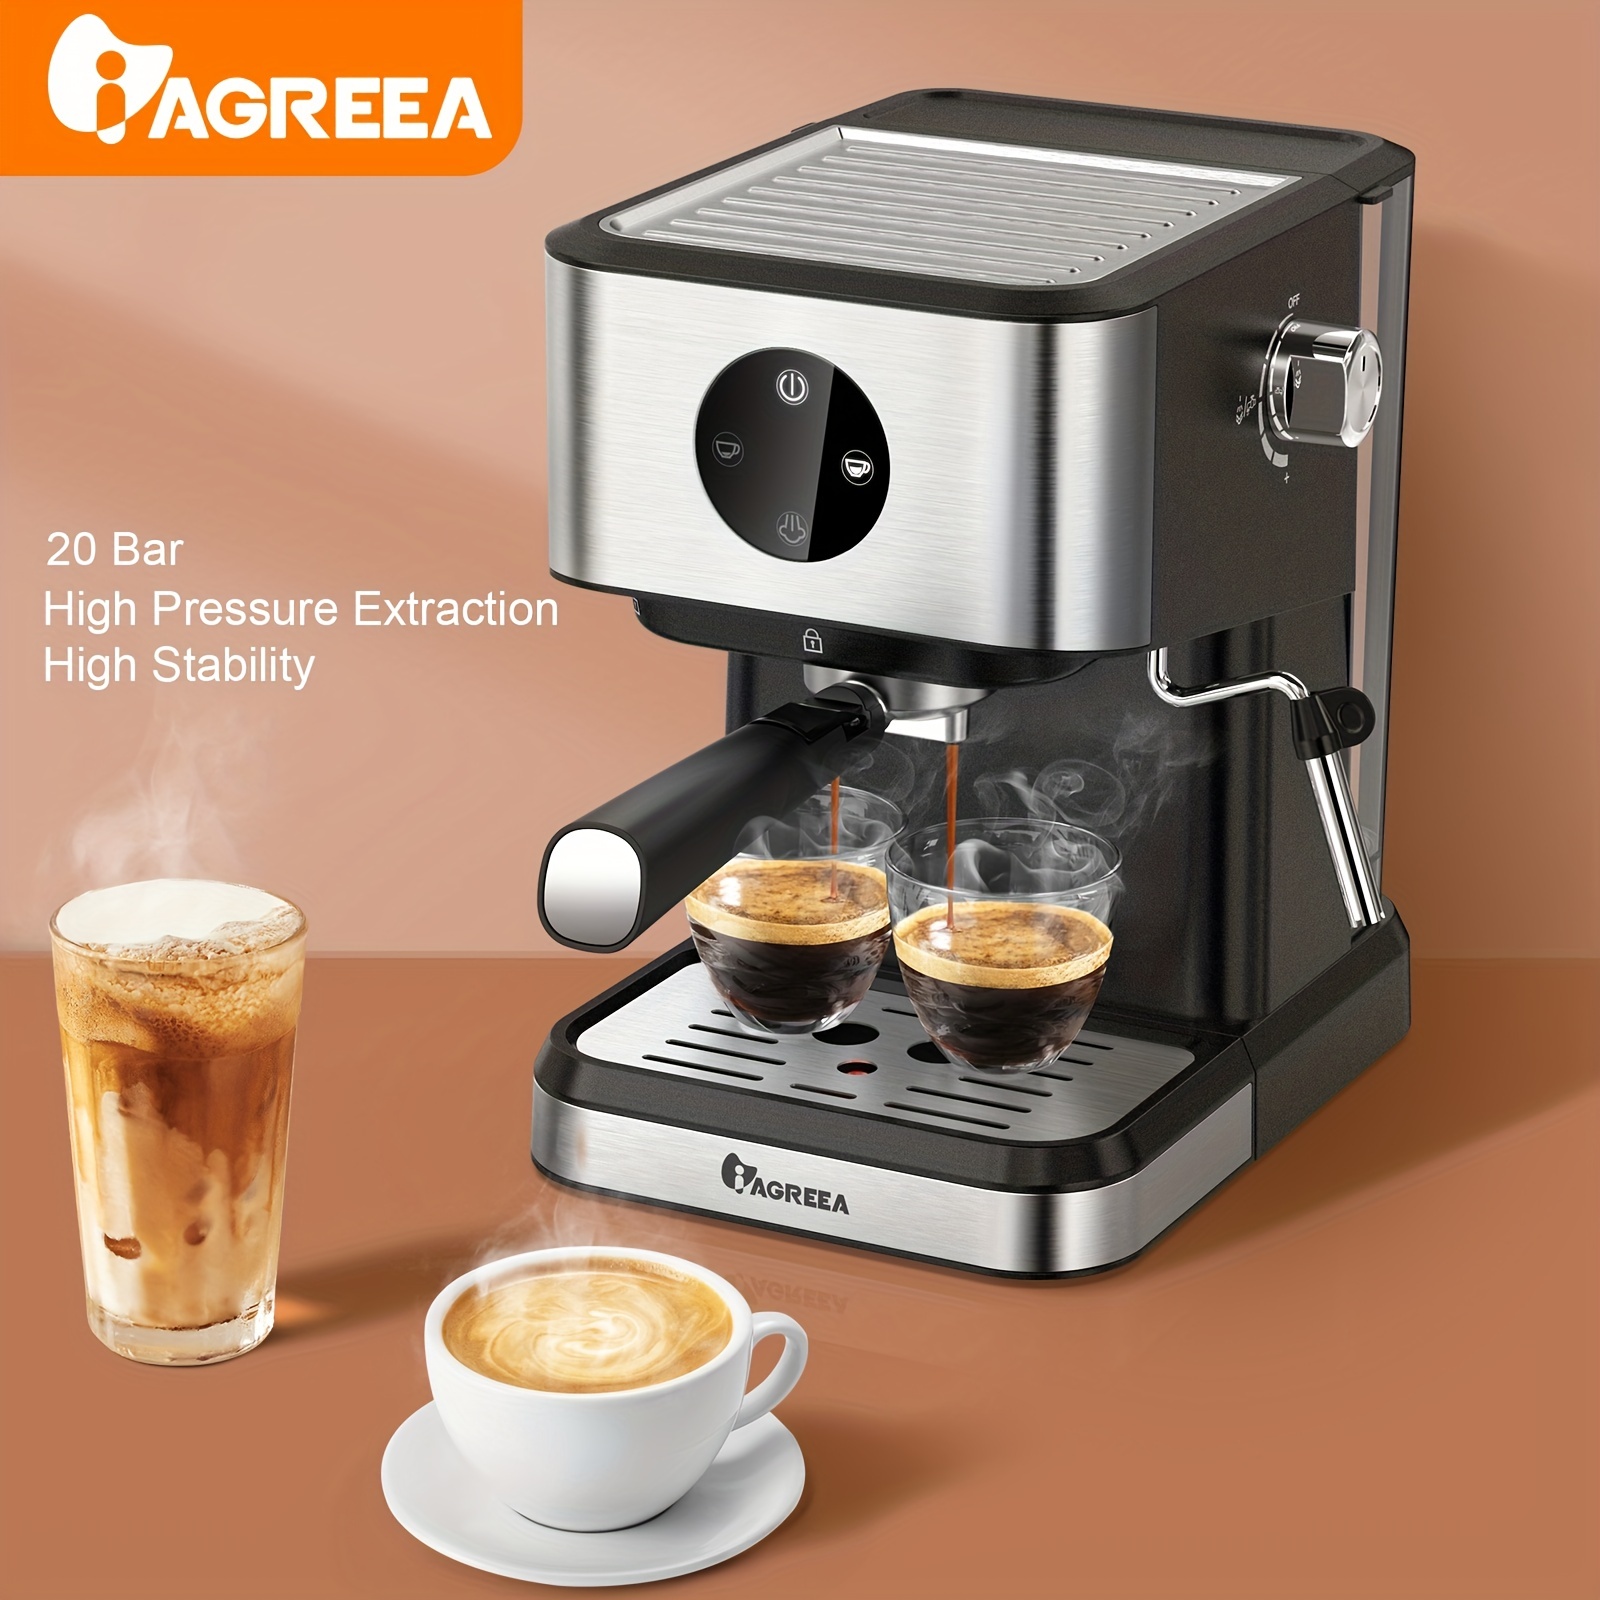 Termalimex - ¡Máquina de Espresso Todo en Uno! La Cafetera Breville permite  crear café de especialidad desde casa, degustando de un aroma y sabor único  al comenzar o terminar el día. Además